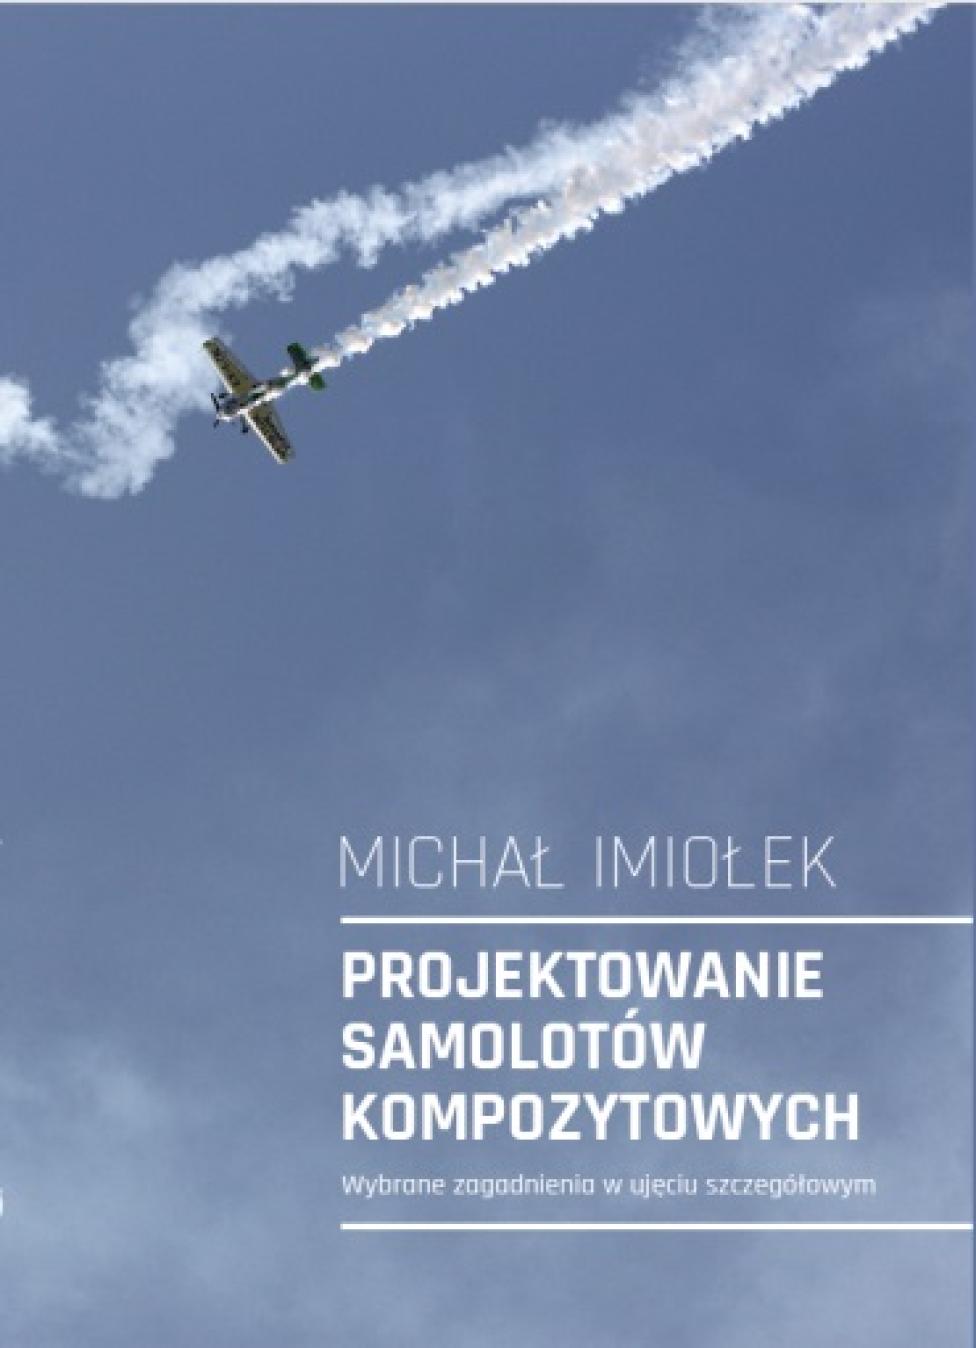 Michał Imiołek „Projektowanie samolotów kompozytowych – wybrane zagadnienia w ujęciu szczegółowym”